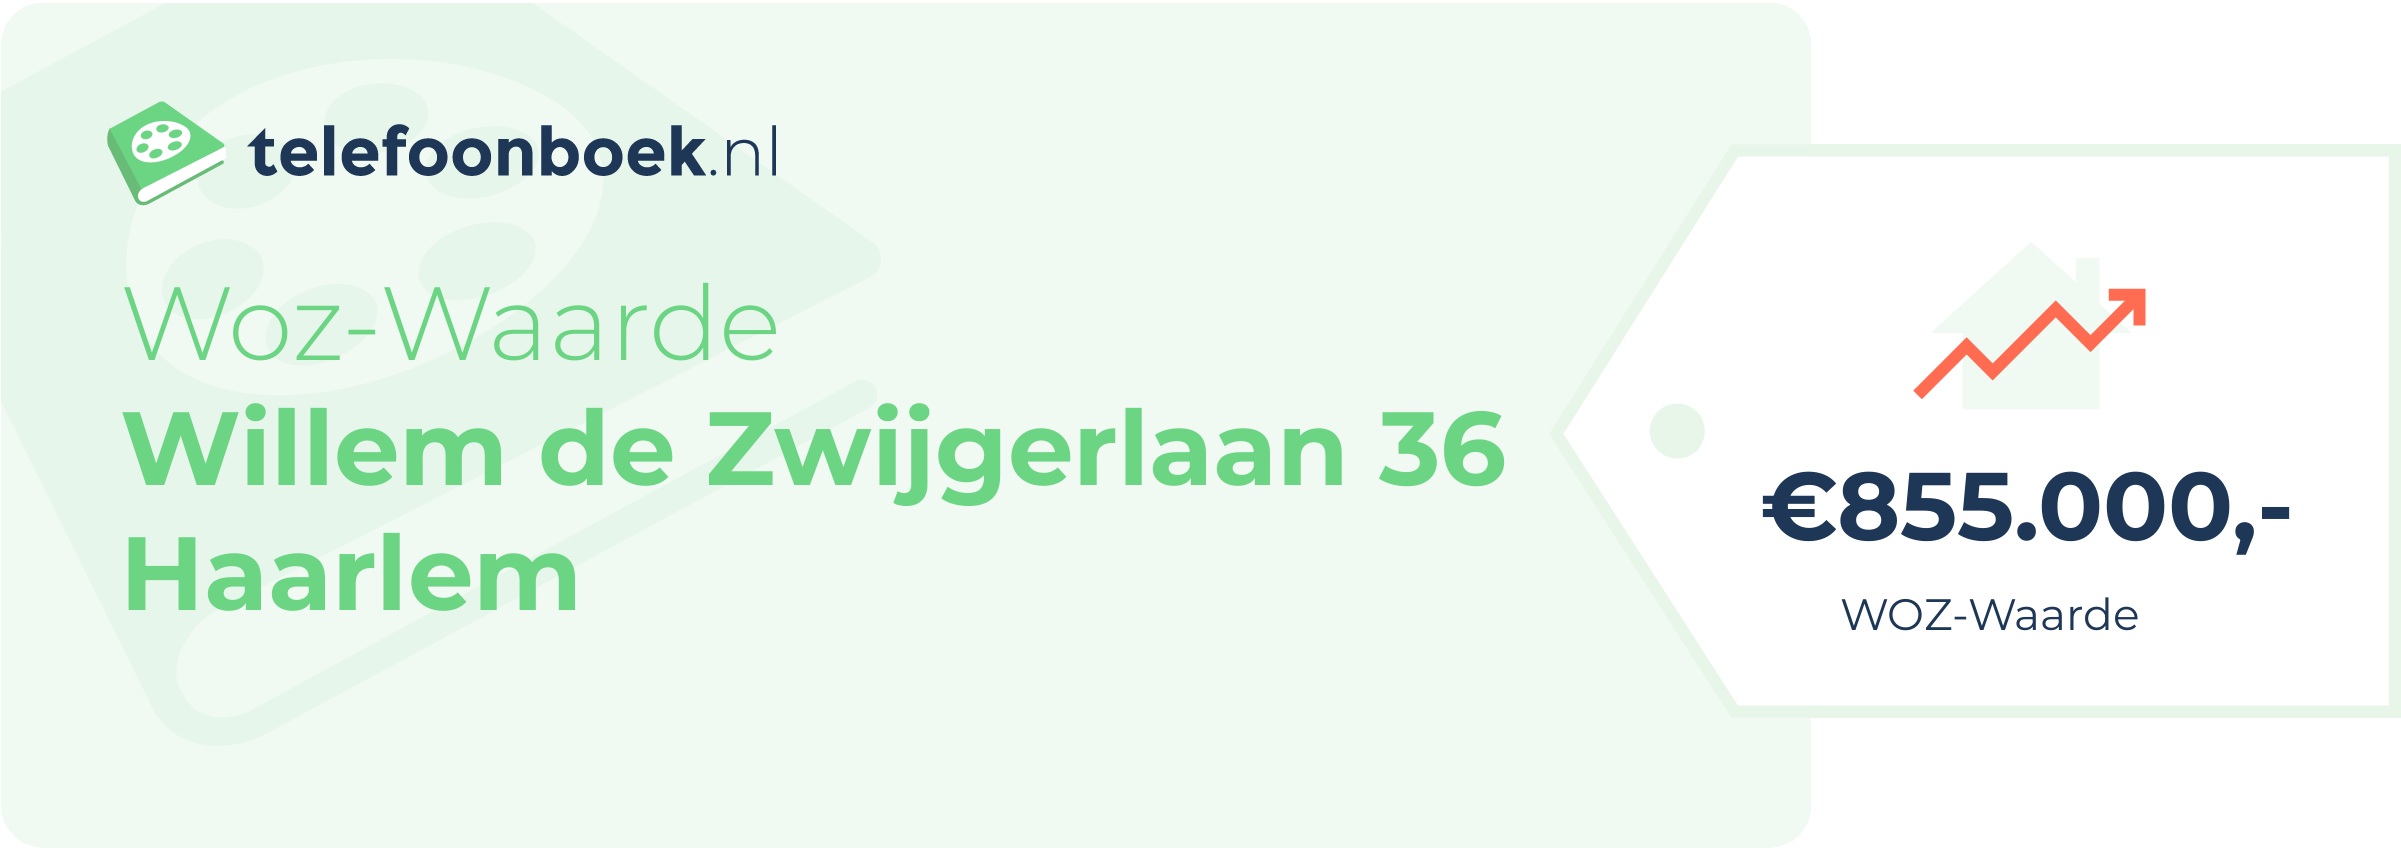 WOZ-waarde Willem De Zwijgerlaan 36 Haarlem